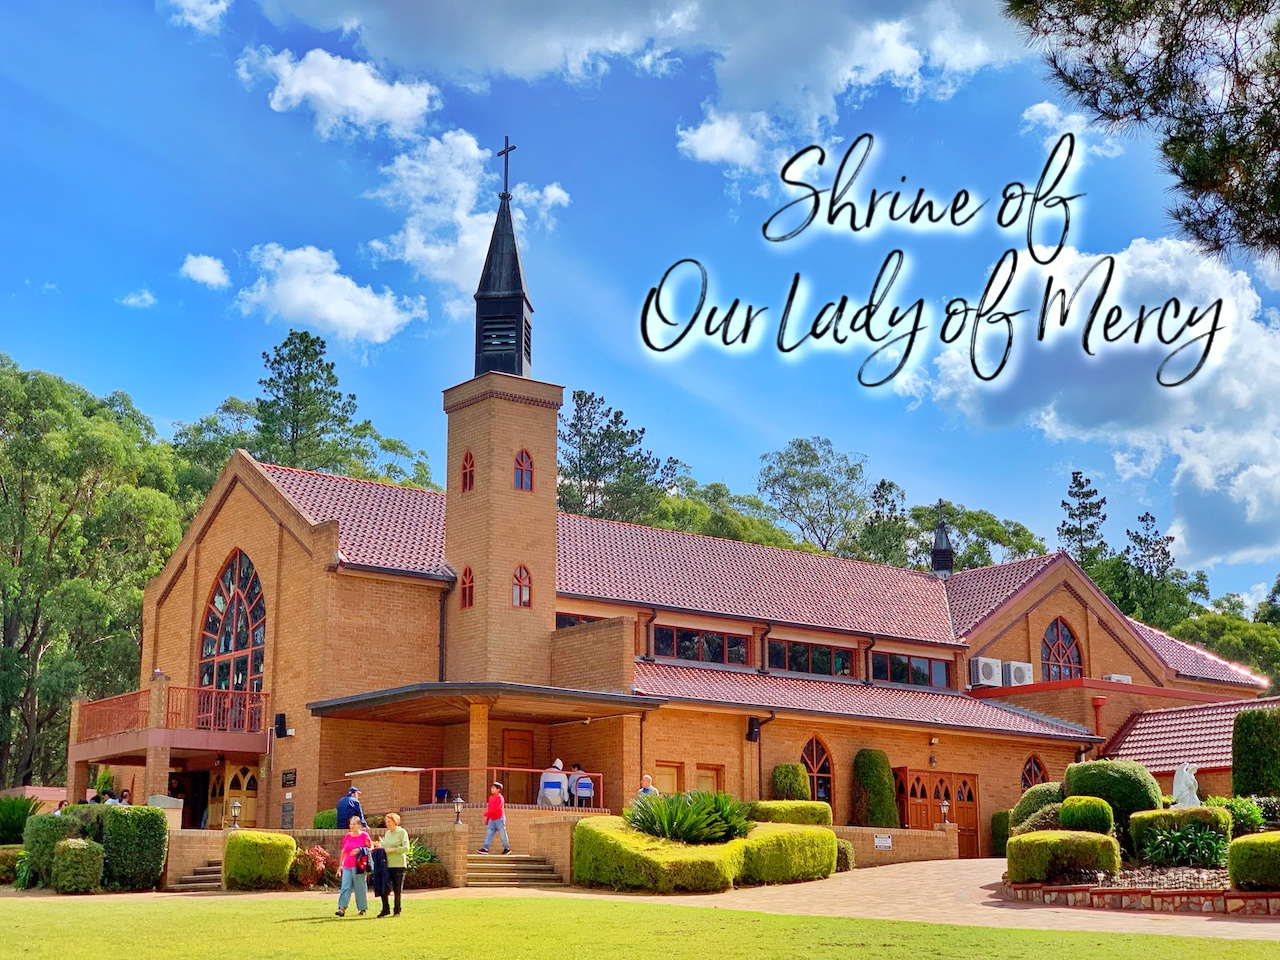 Shrine of Our Lady of Mercy - tobringtogether.com